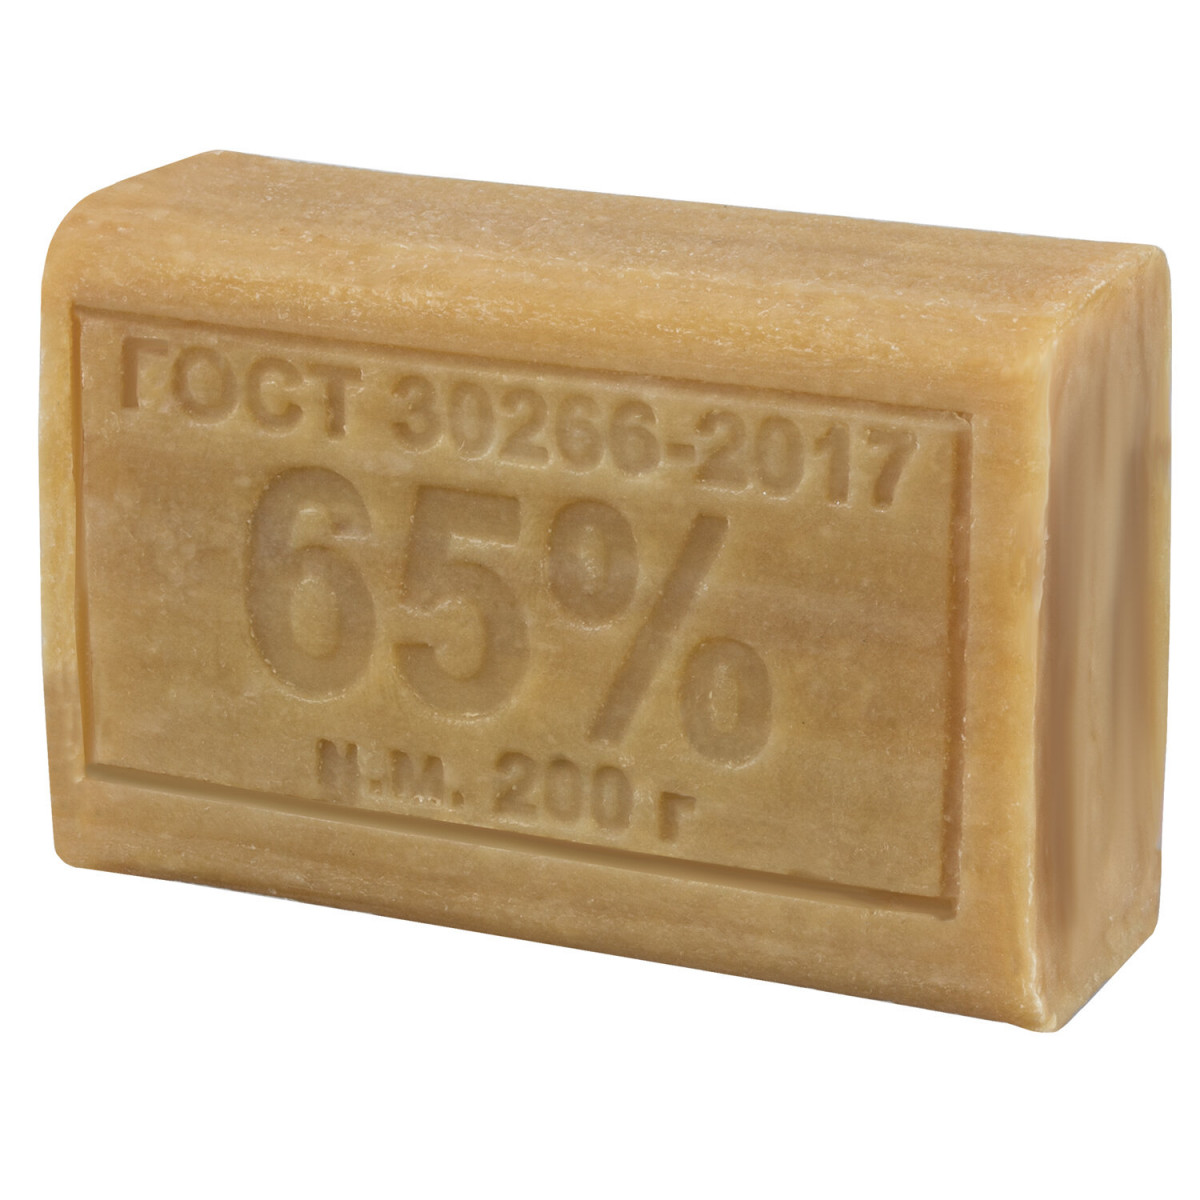 Хозяйственное мыло 65% (без упаковки)-0